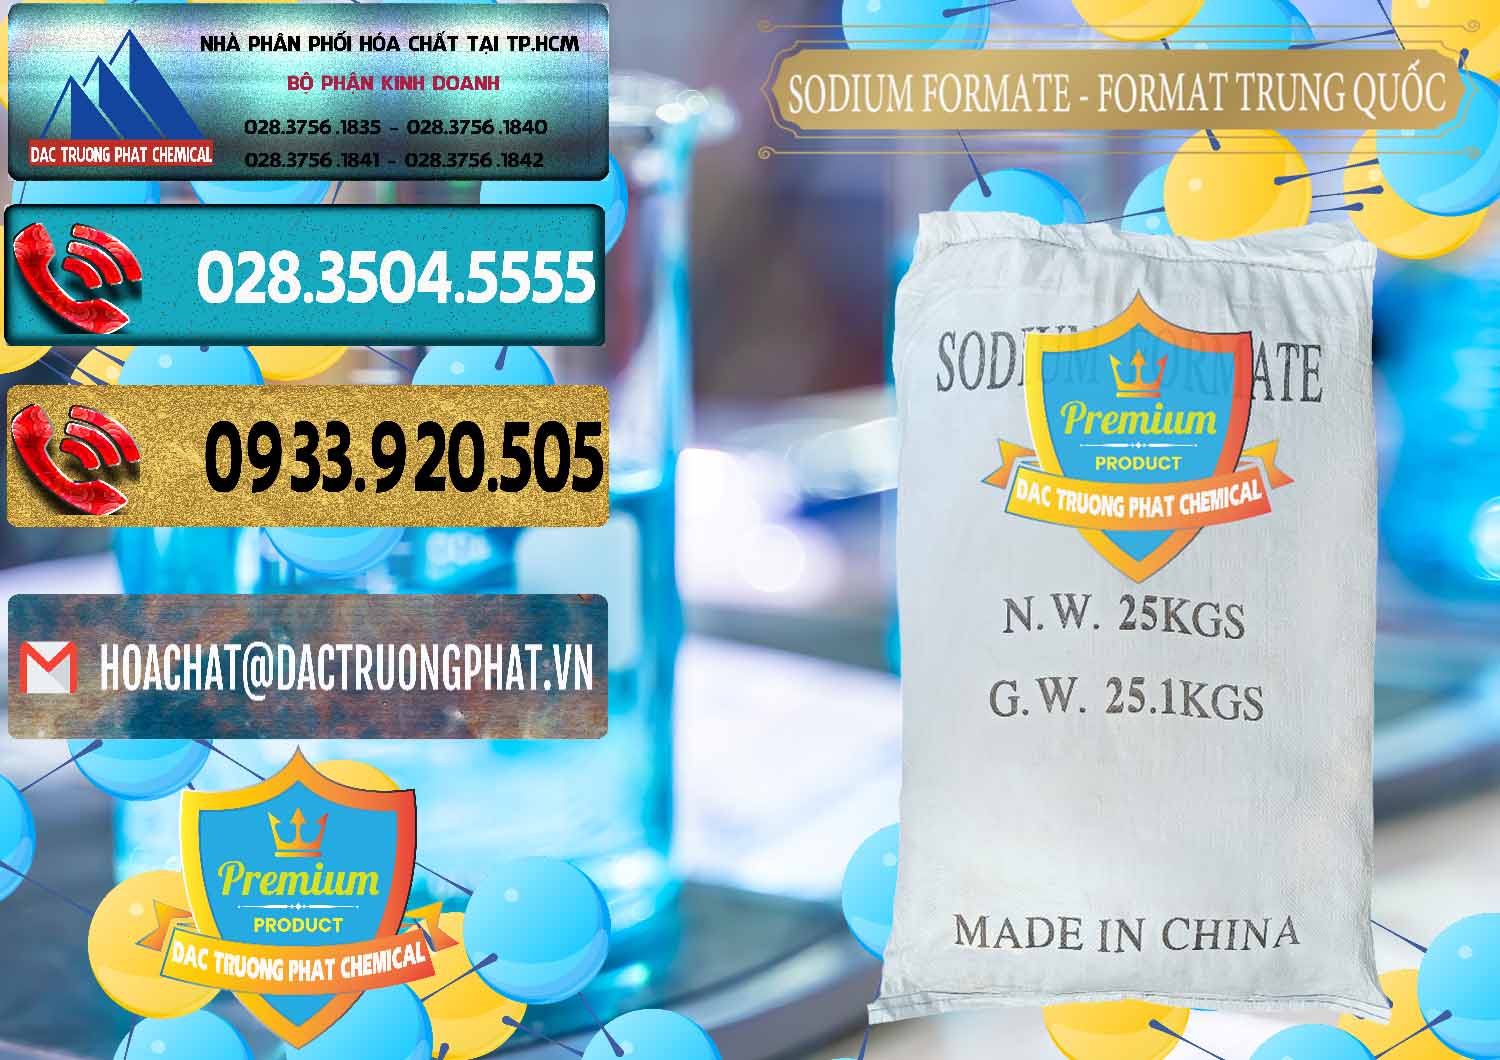 Cty phân phối & bán Sodium Formate - Natri Format Trung Quốc China - 0142 - Chuyên phân phối ( bán ) hóa chất tại TP.HCM - hoachatdetnhuom.com